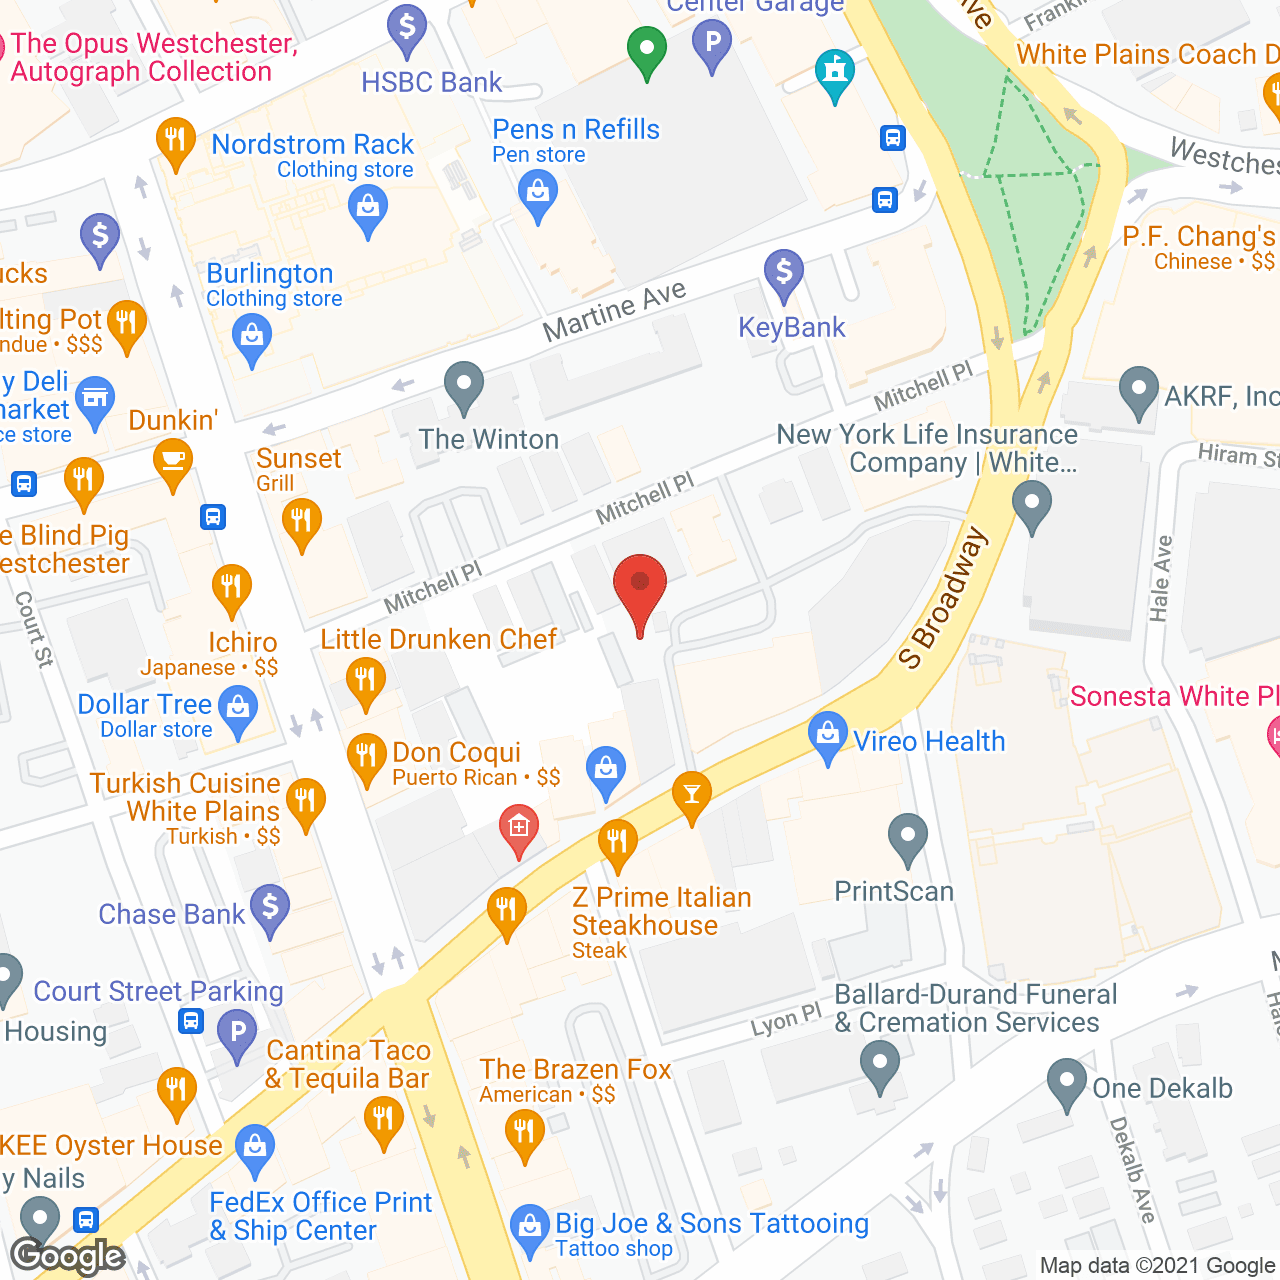 SeniorBridge - White Plains, NY in google map